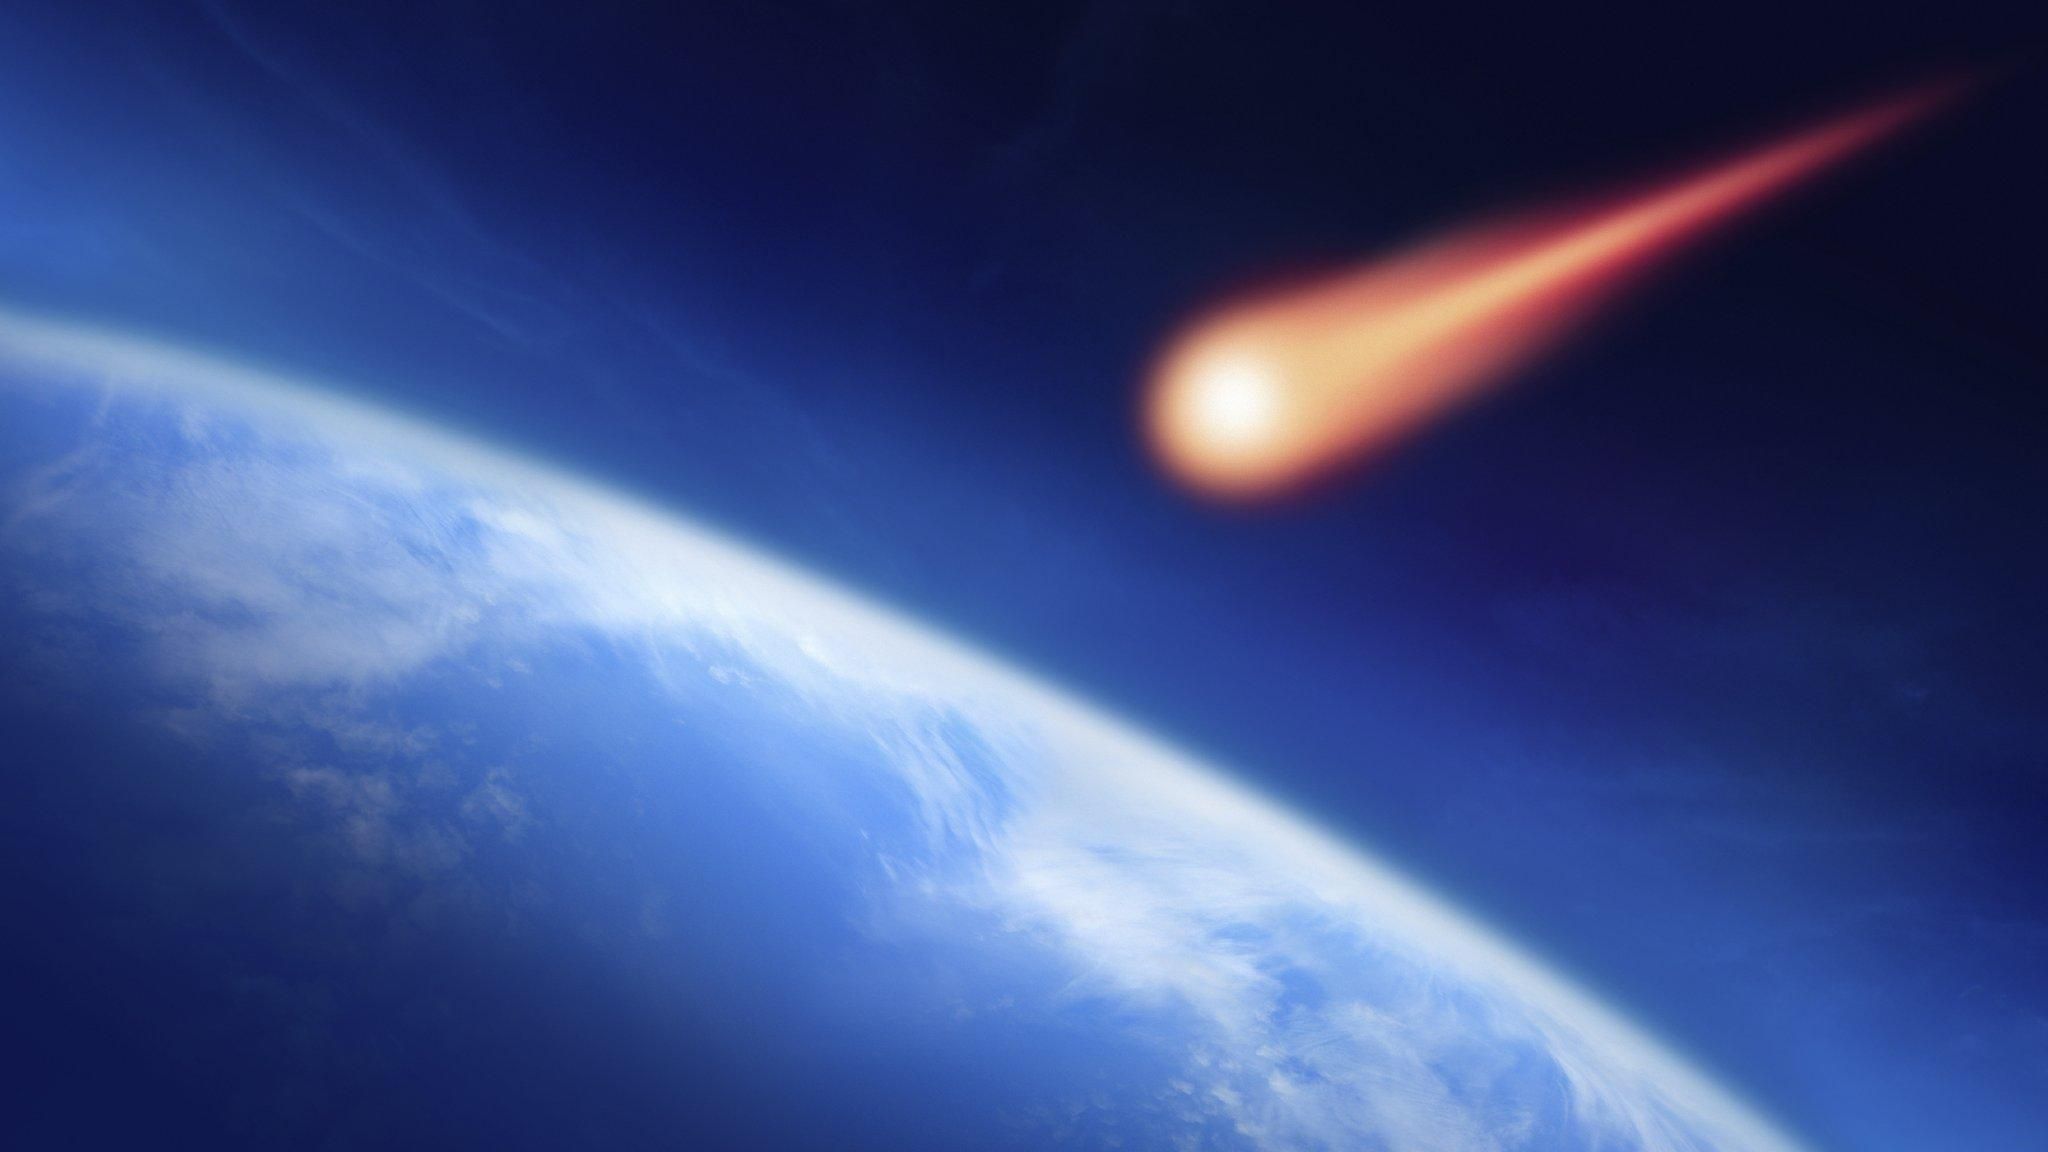 Музей штата Мэн приобрел крупнейший метеорит с Марса 